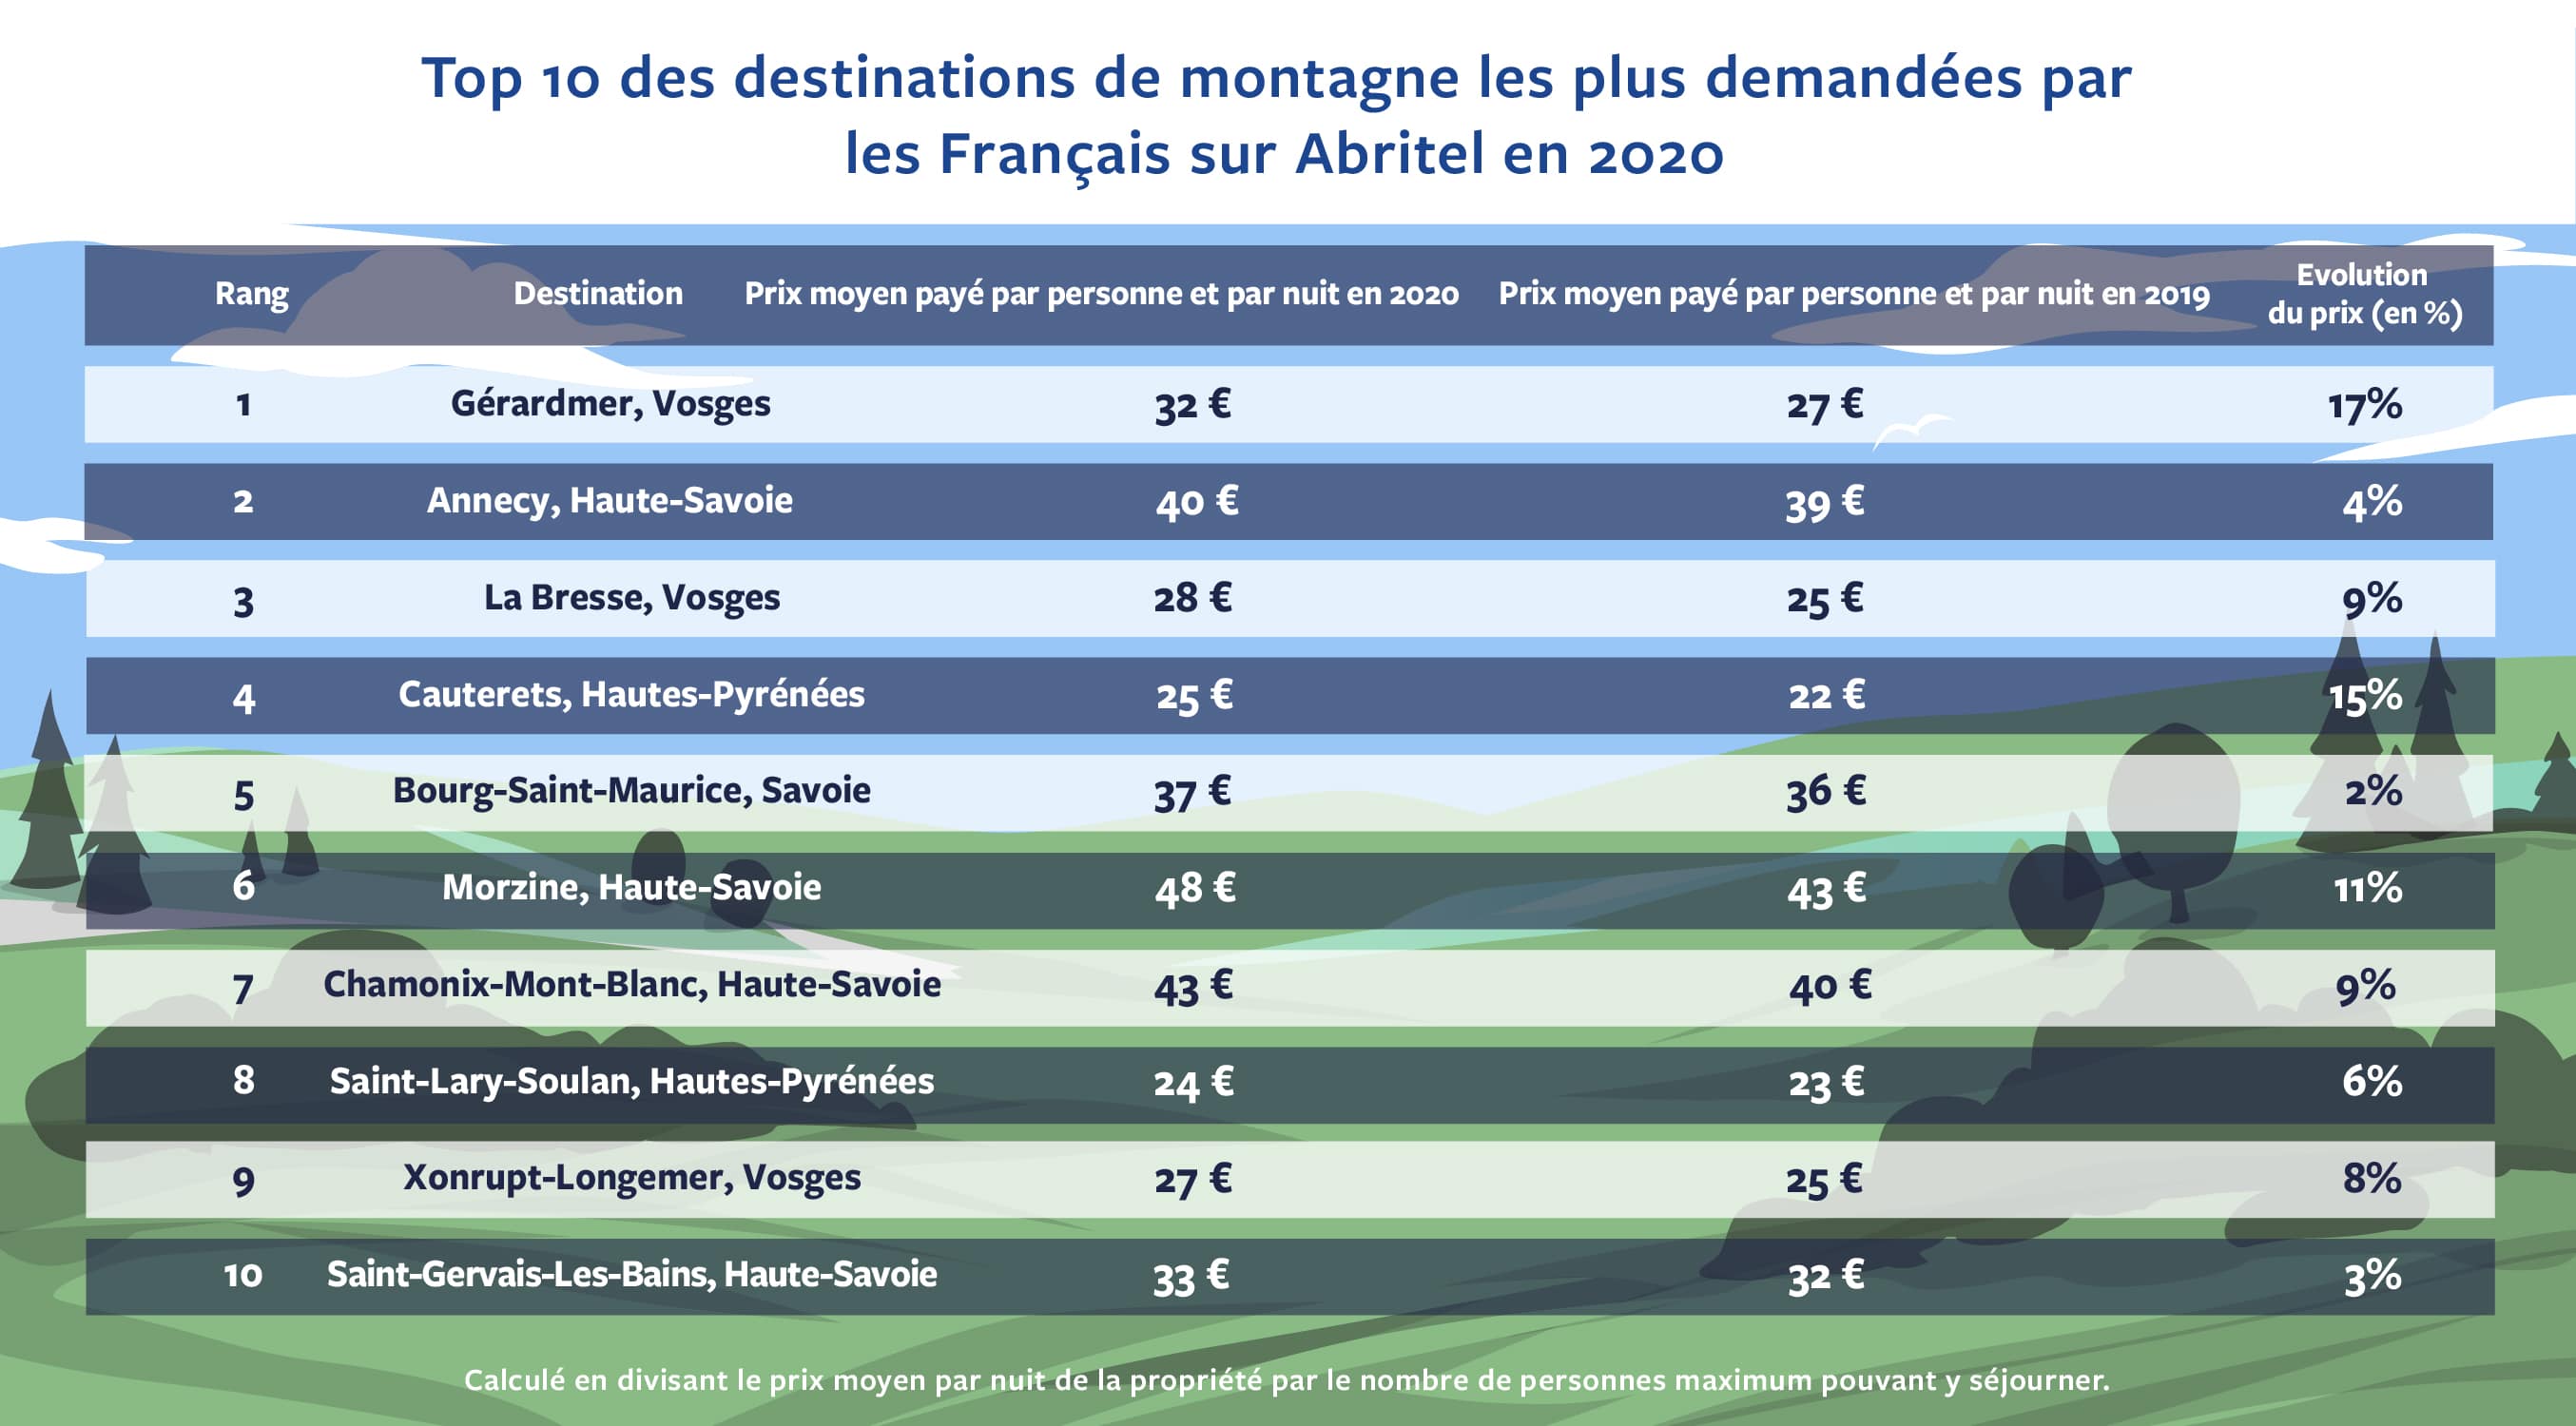 Top 10 des destinations de montagne les plus demandées par les Français sur Abritel en 2020 